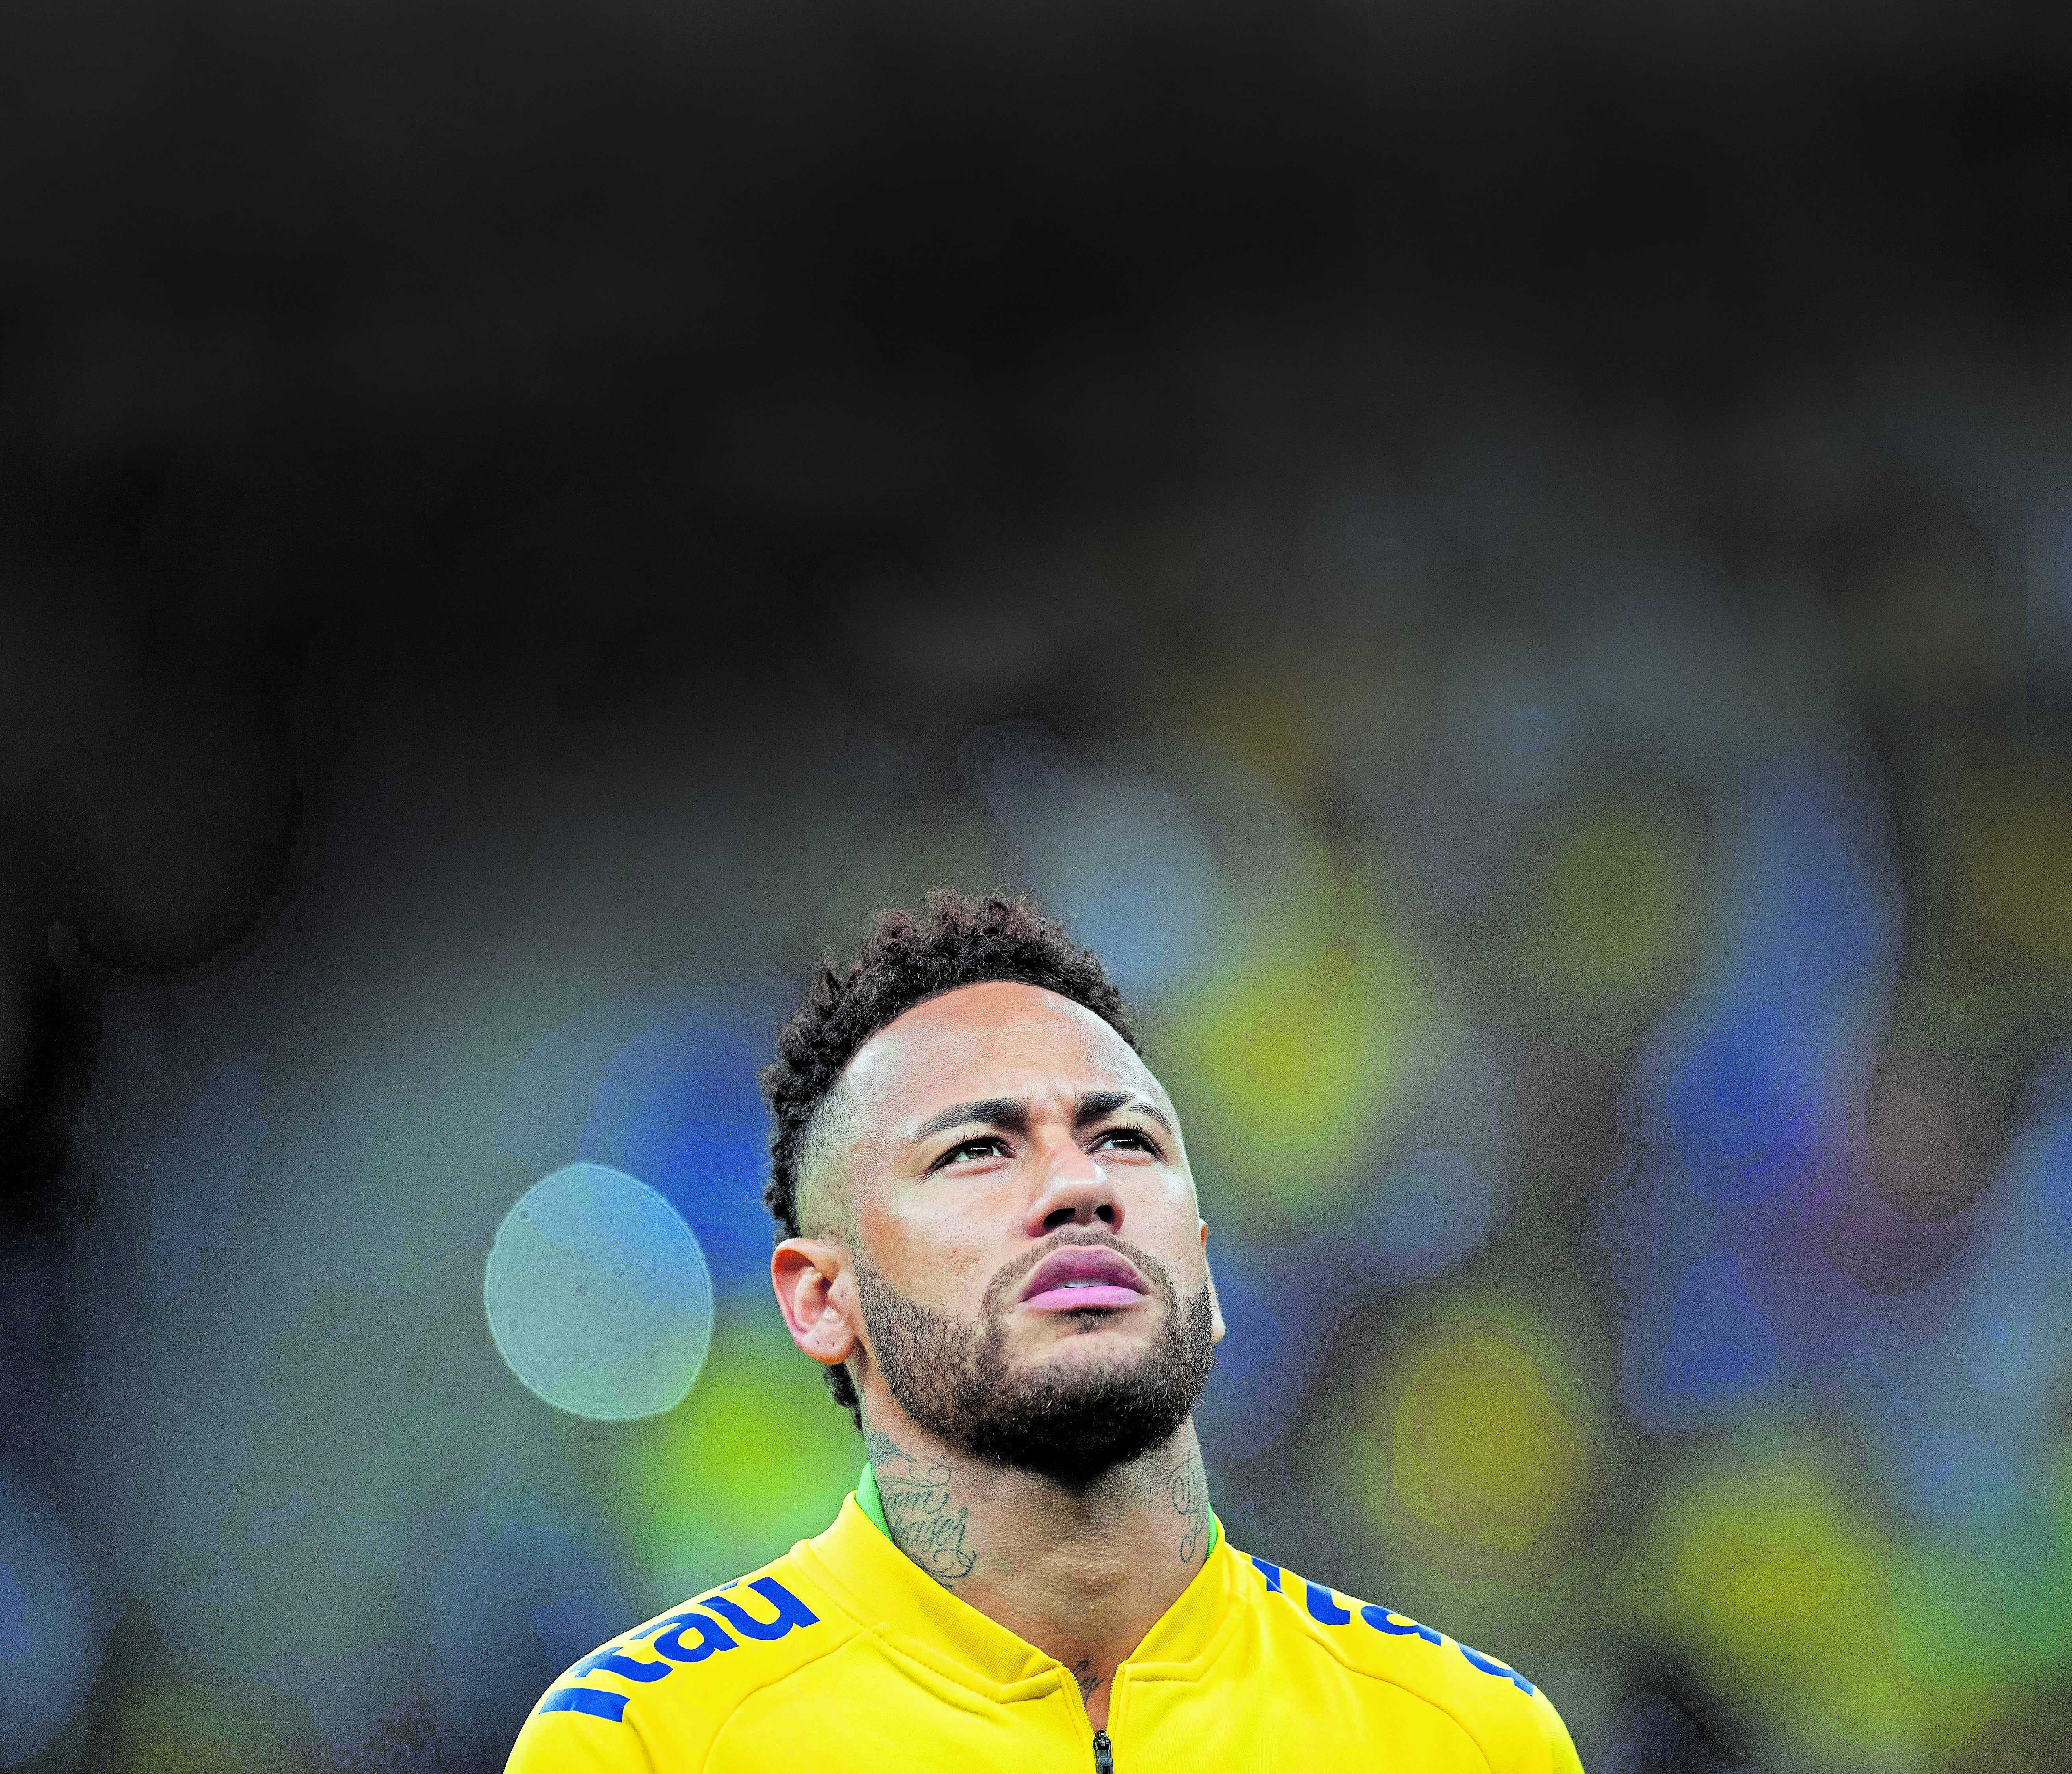 Neymar (Brasil). EFE/Joédson Alves